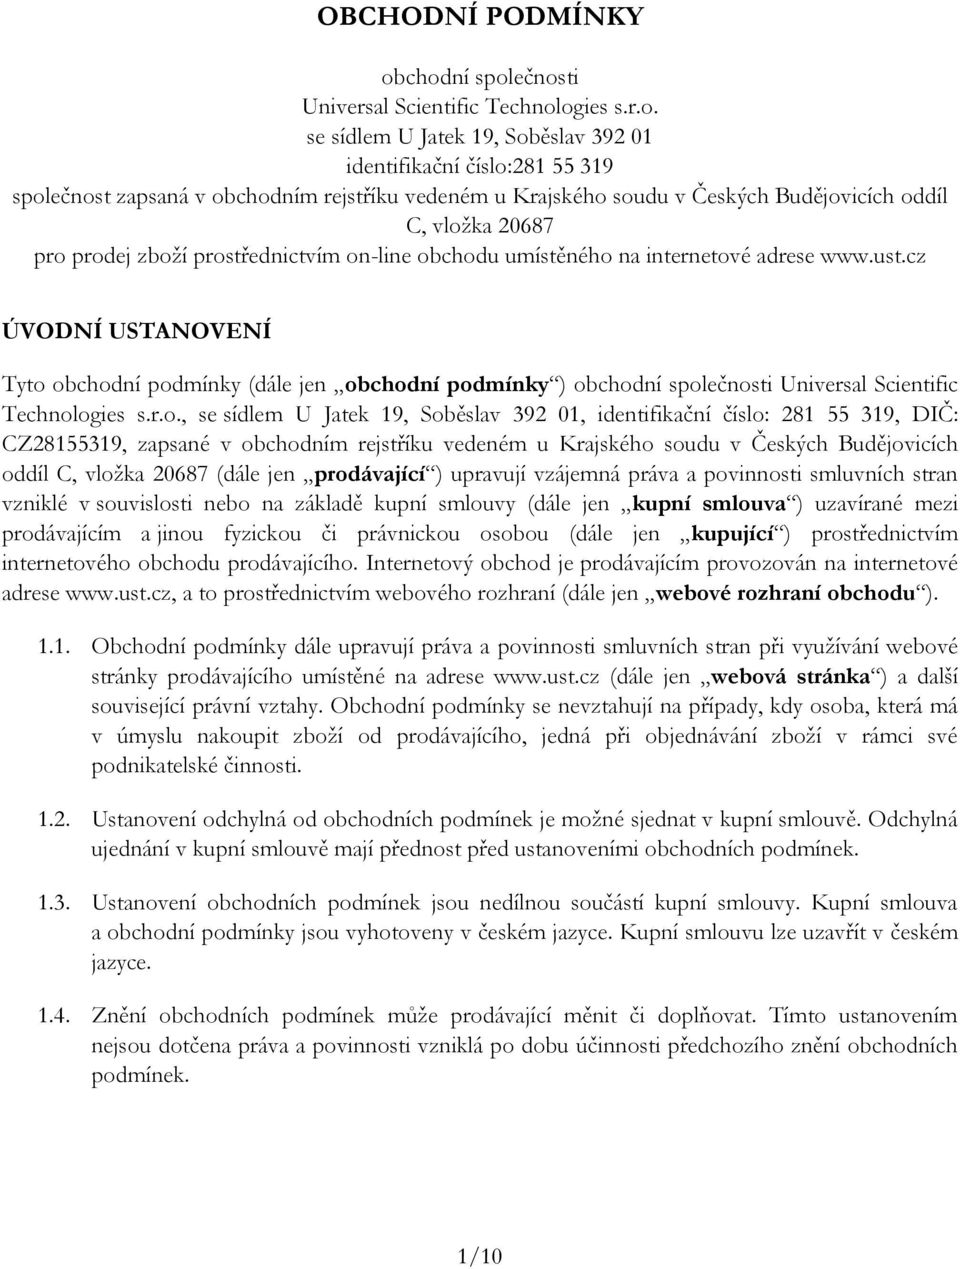 Českých Budějovicích oddíl C, vložka 20687 pro prodej zboží prostřednictvím on-line obchodu umístěného na internetové adrese www.ust.